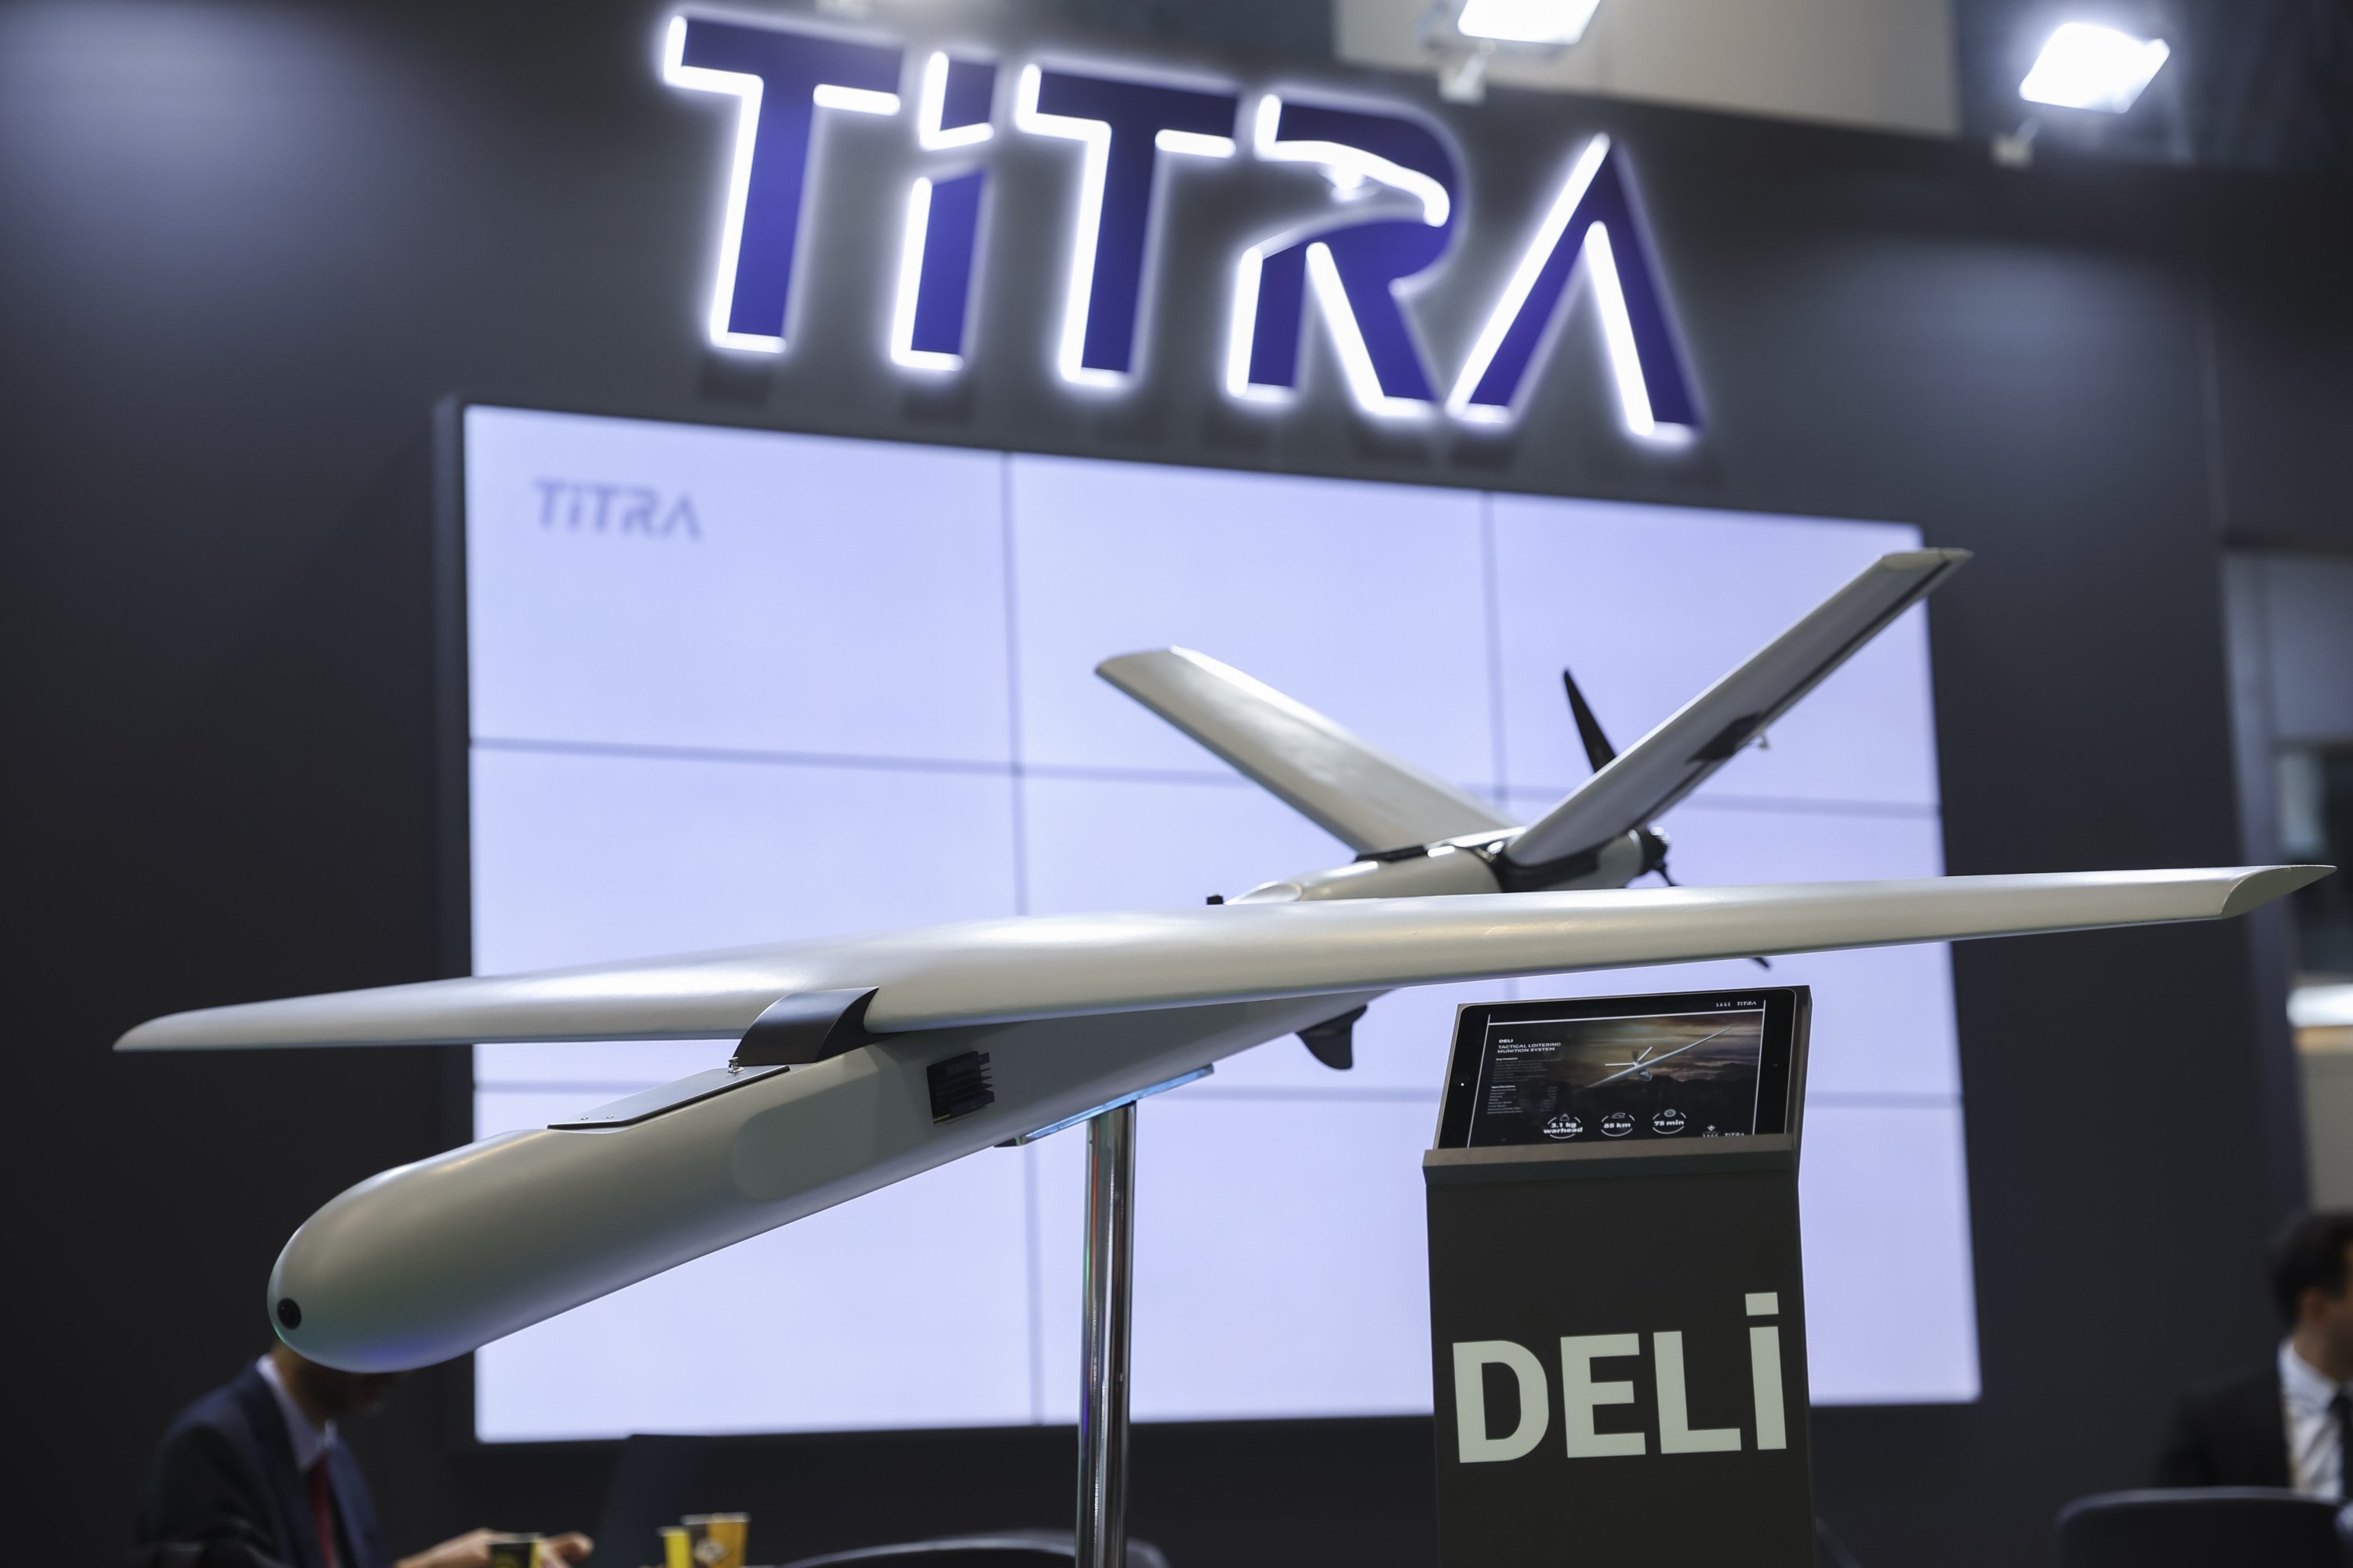 Titra stellt Deli Kamikaze-Drohne mit 180 km/h Geschwindigkeit und 3,1 kg Nutzlast vor